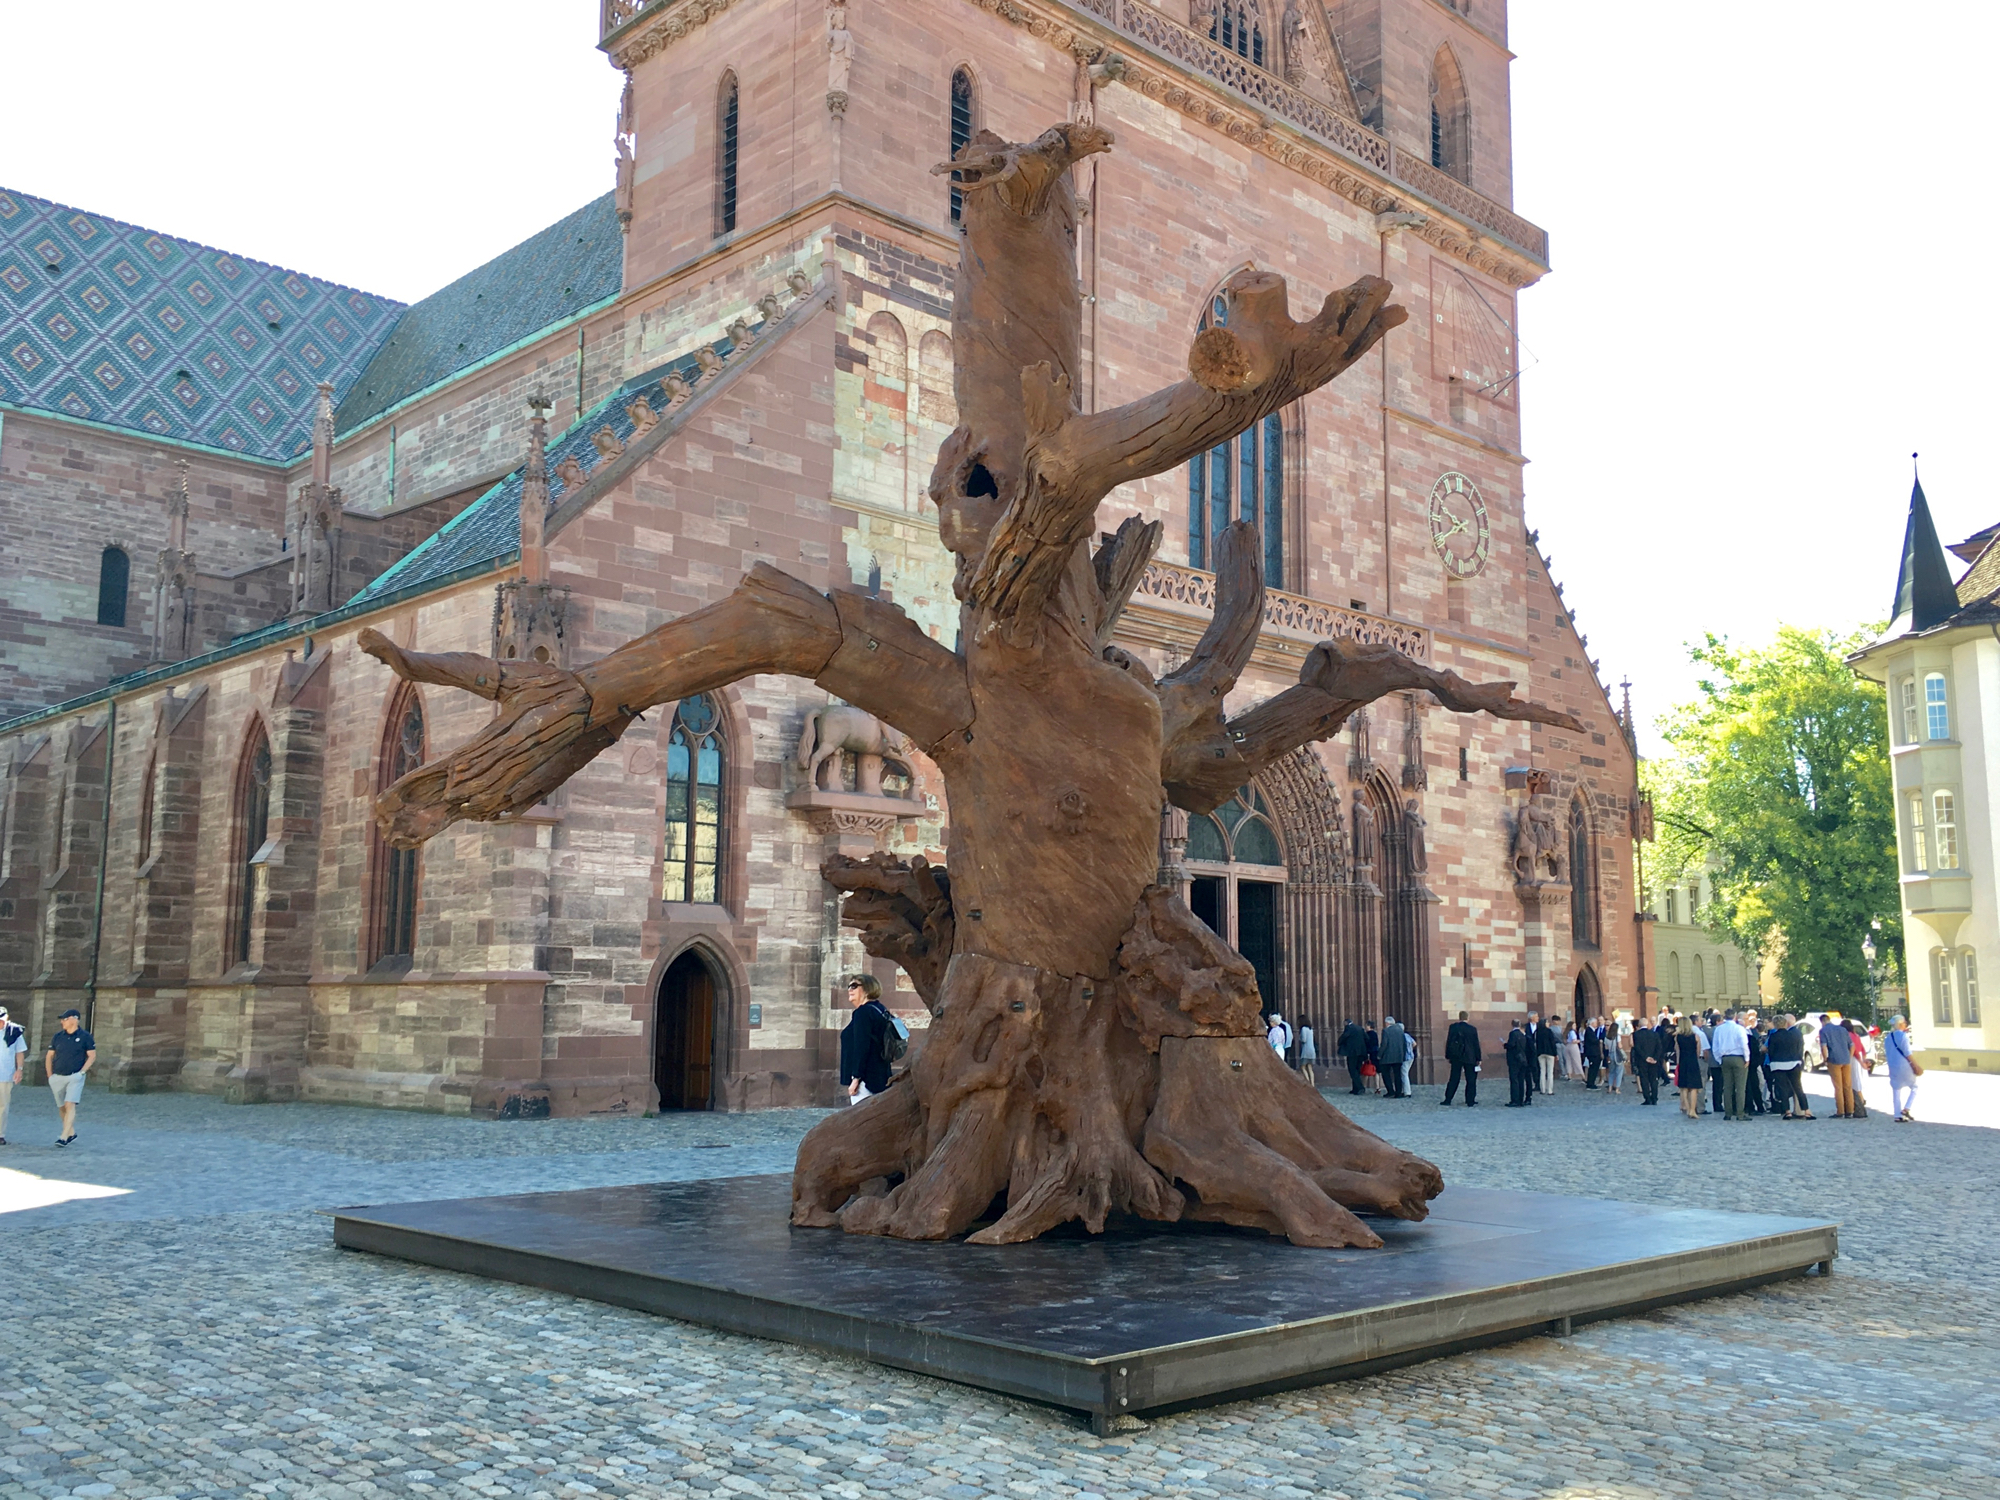 Toter Baum, mächtig und auch wieder nicht: «Iron Tree» von Ai Weiwei auf dem Münsterplatz.